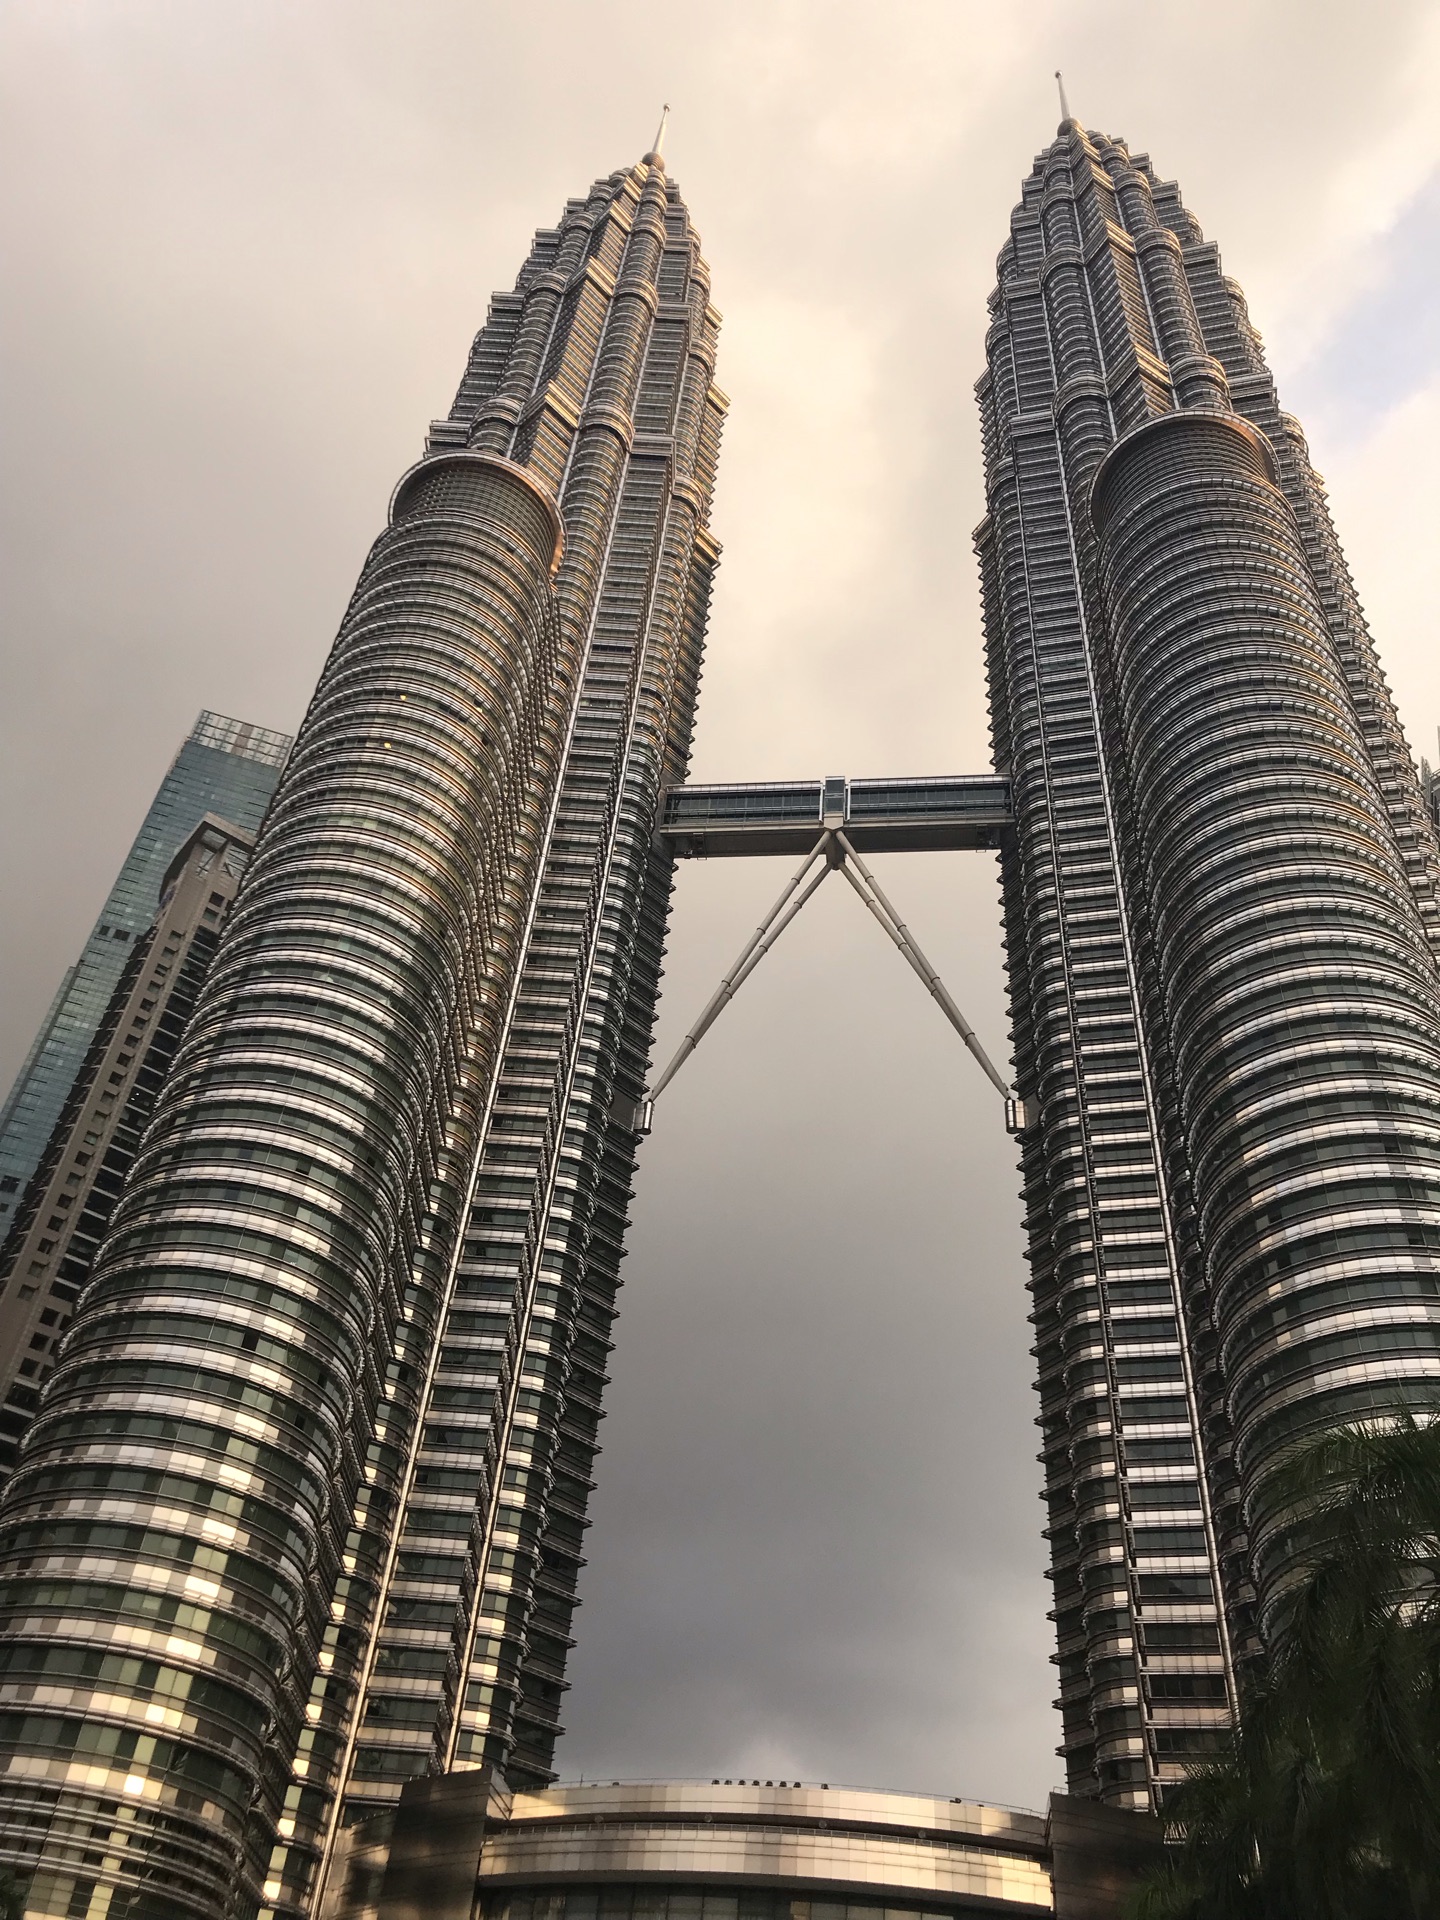 【携程攻略】吉隆坡双子塔景点,吉隆坡石油双子塔曾经也是世界最高的摩天大楼，坐落于吉隆坡市中市(K…